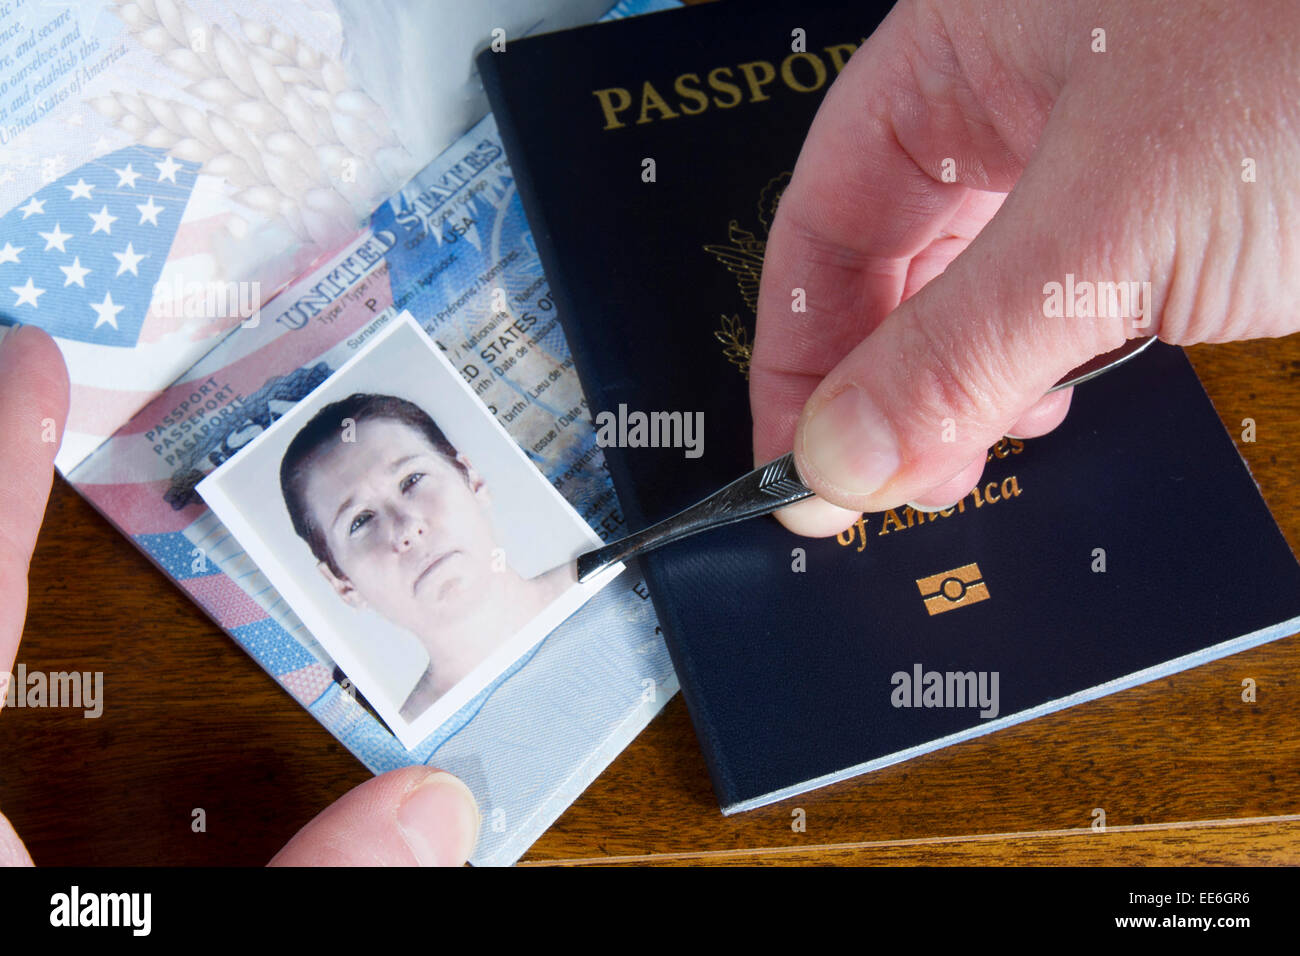 Mano con le pinzette azienda id foto oltre il passaporto come se la contraffazione dei documenti di viaggio Foto Stock